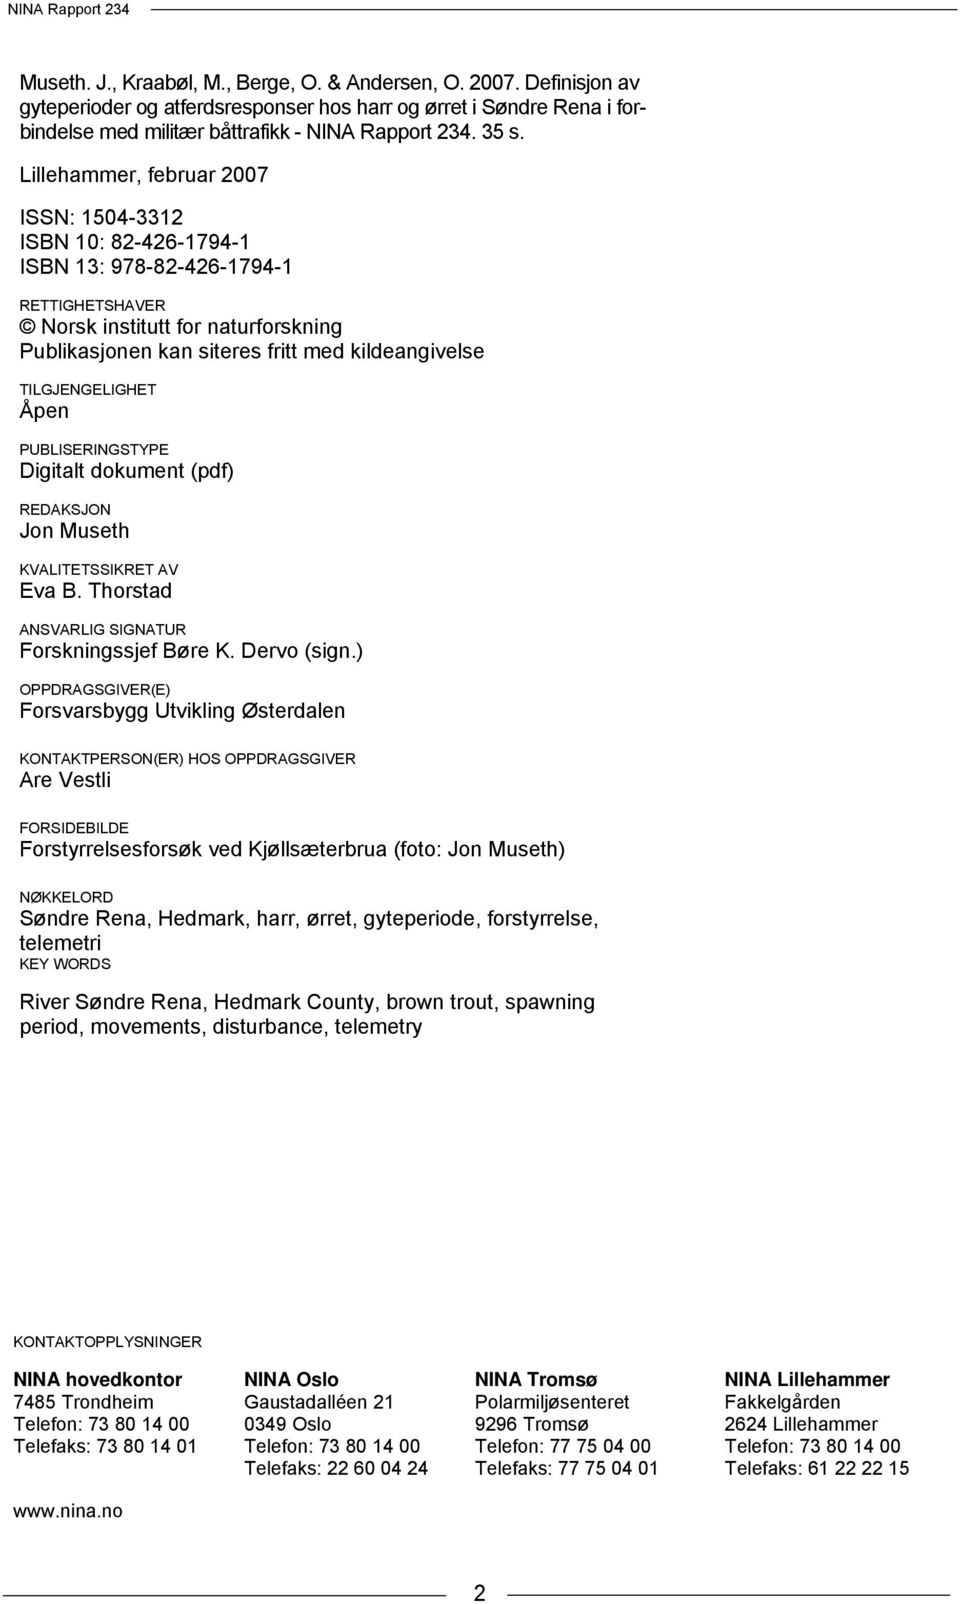 TILGJENGELIGHET Åpen PUBLISERINGSTYPE Digitalt dokument (pdf) REDAKSJON Jon Museth KVALITETSSIKRET AV Eva B. Thorstad ANSVARLIG SIGNATUR Forskningssjef Børe K. Dervo (sign.